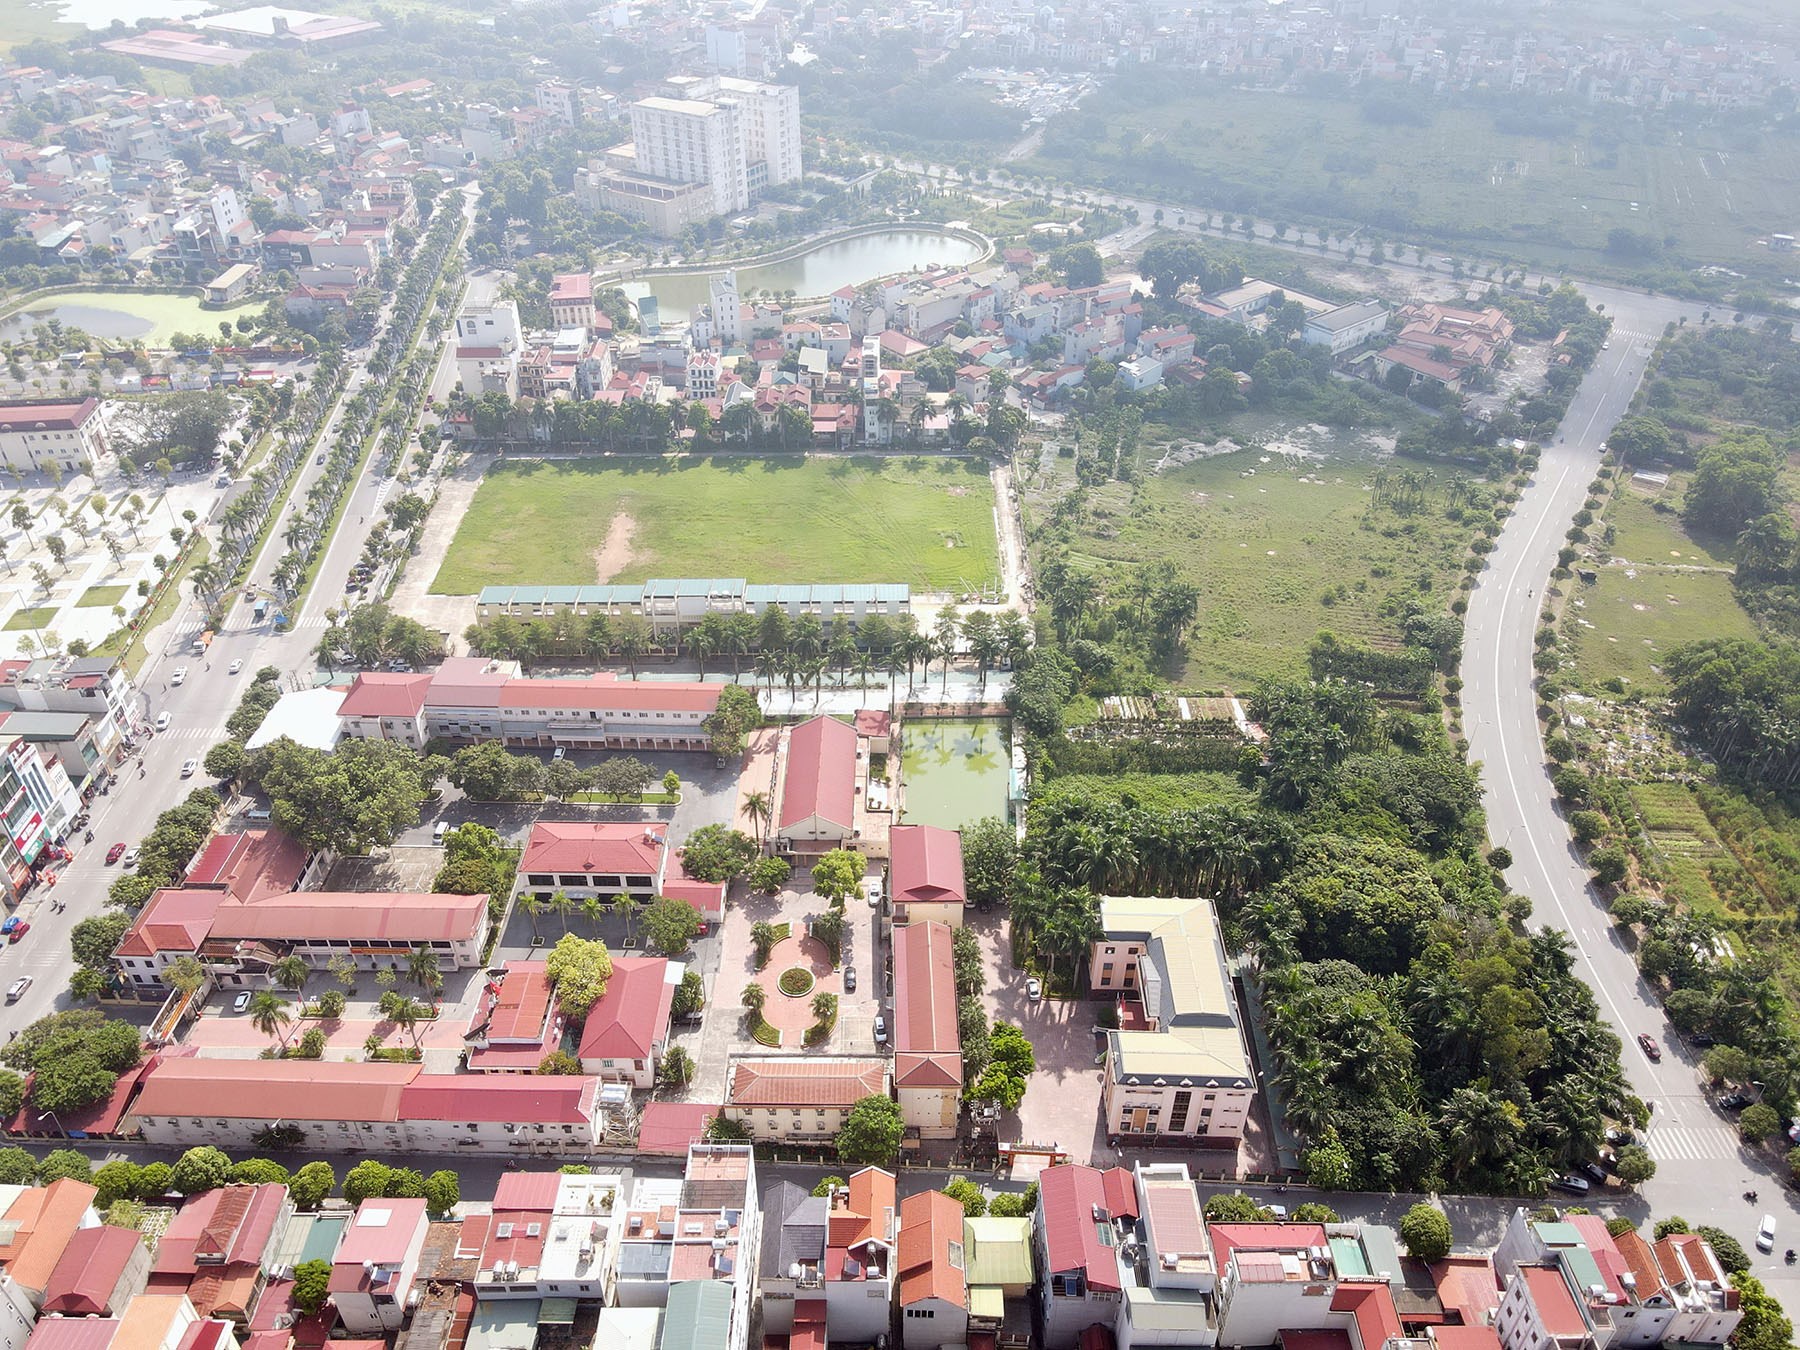 Cận cảnh khu đất quy hoạch xây trung tâm hành chính huyện Đông Anh, Hà Nội